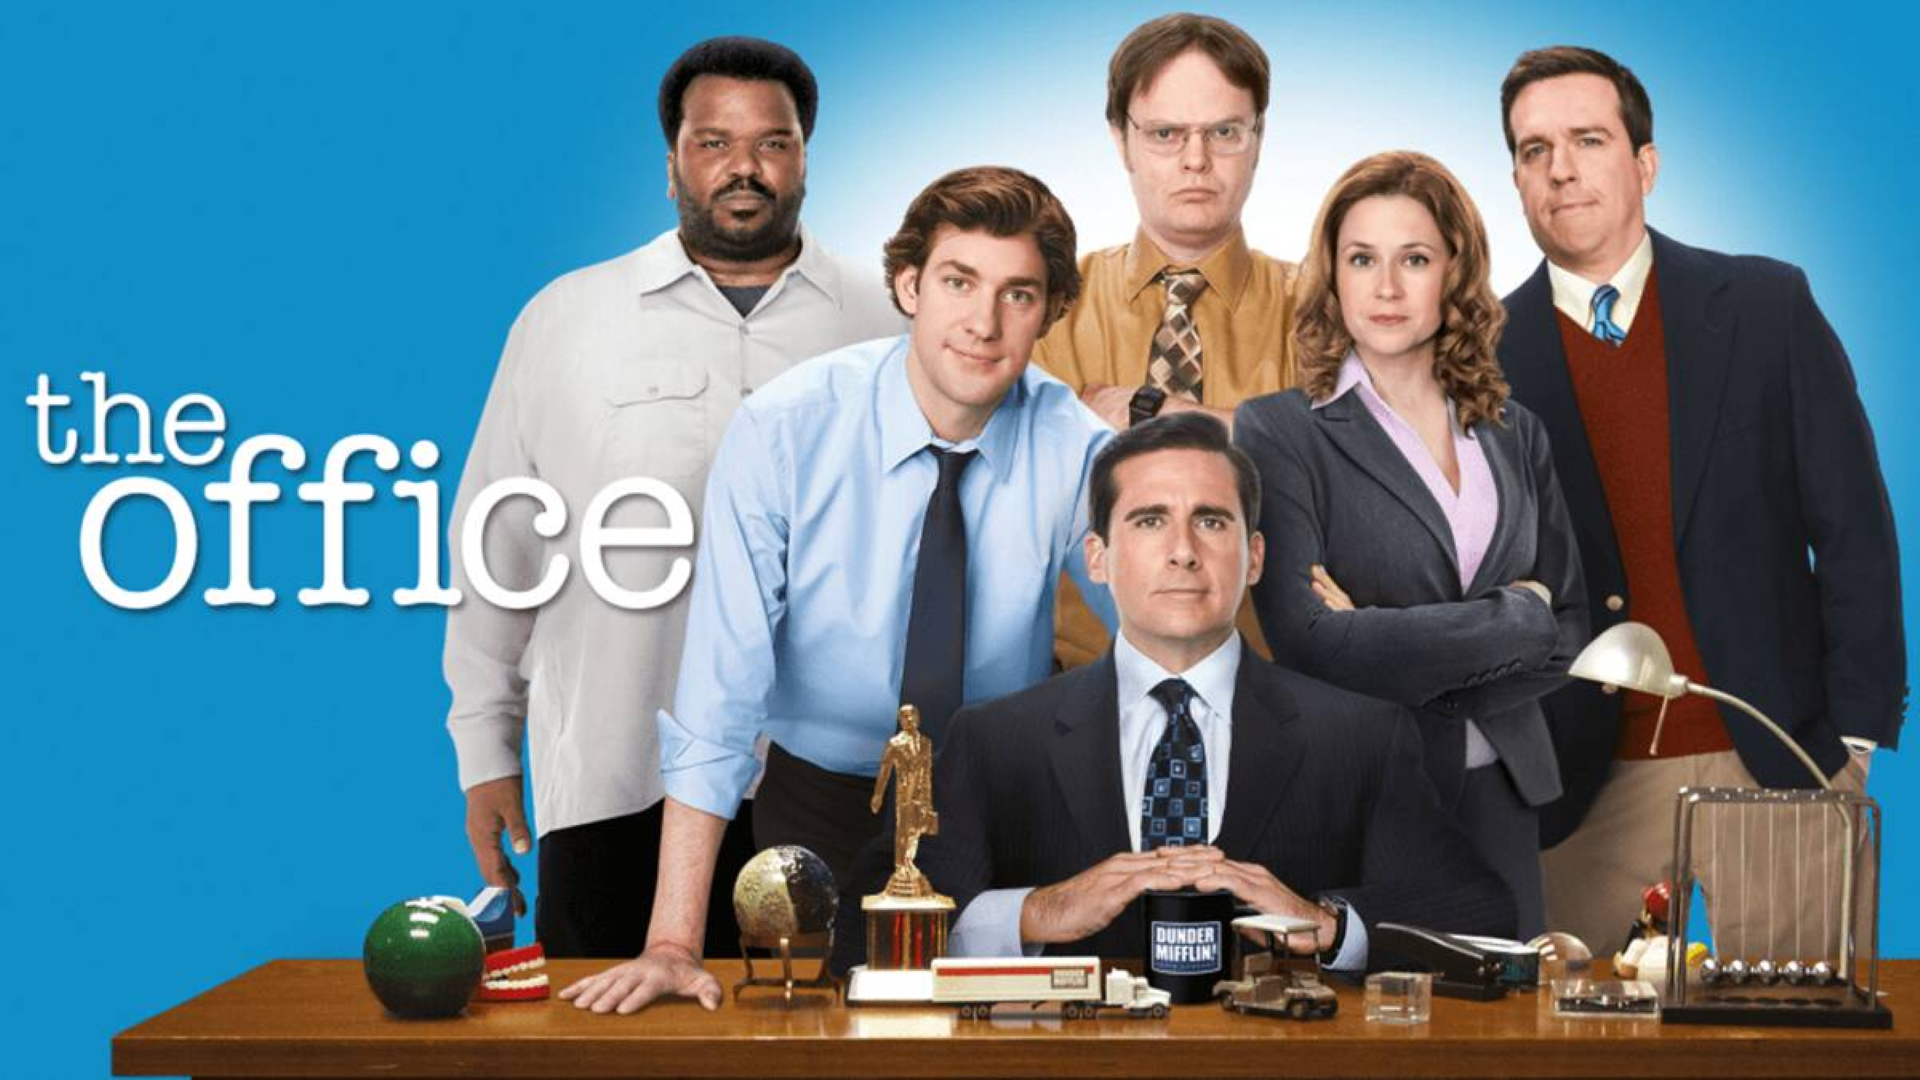 The Office - migliori serie TV su Amazon Prime Video